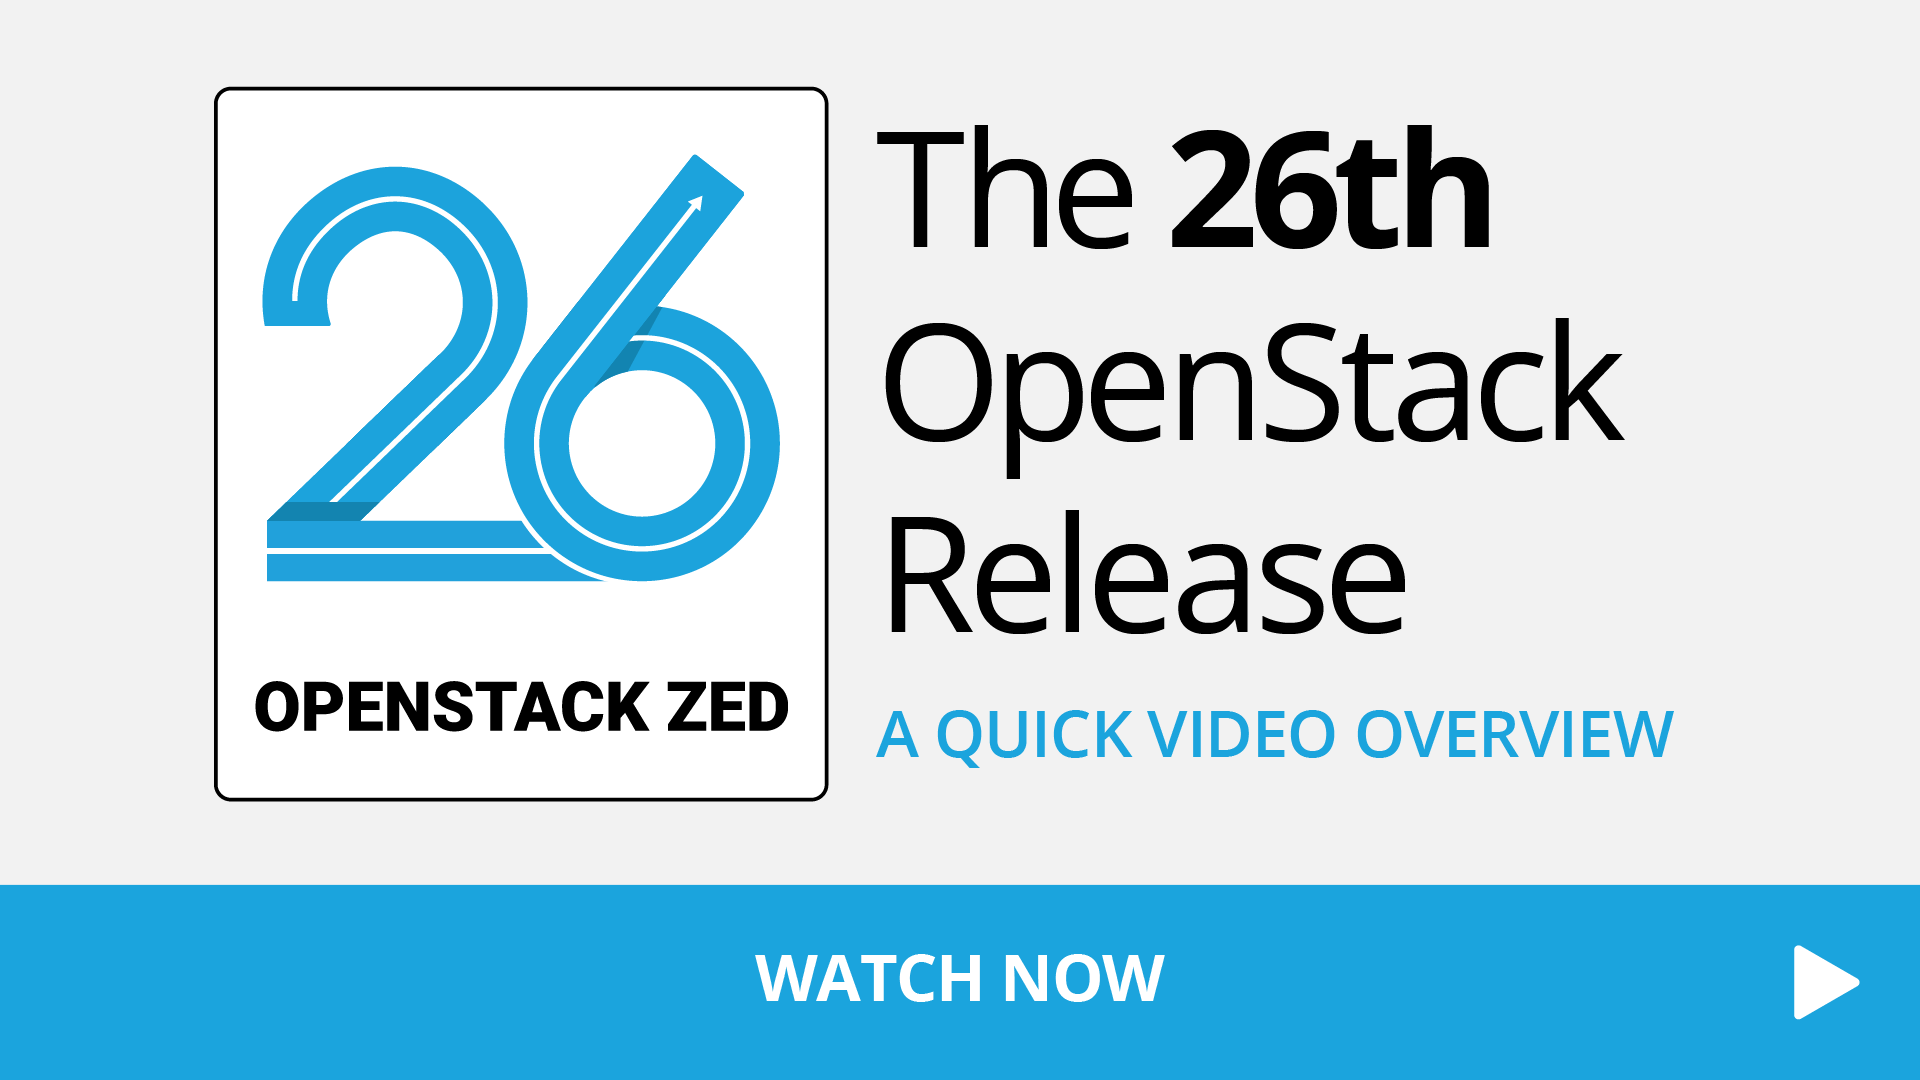 OpenStack Zed Release video Image